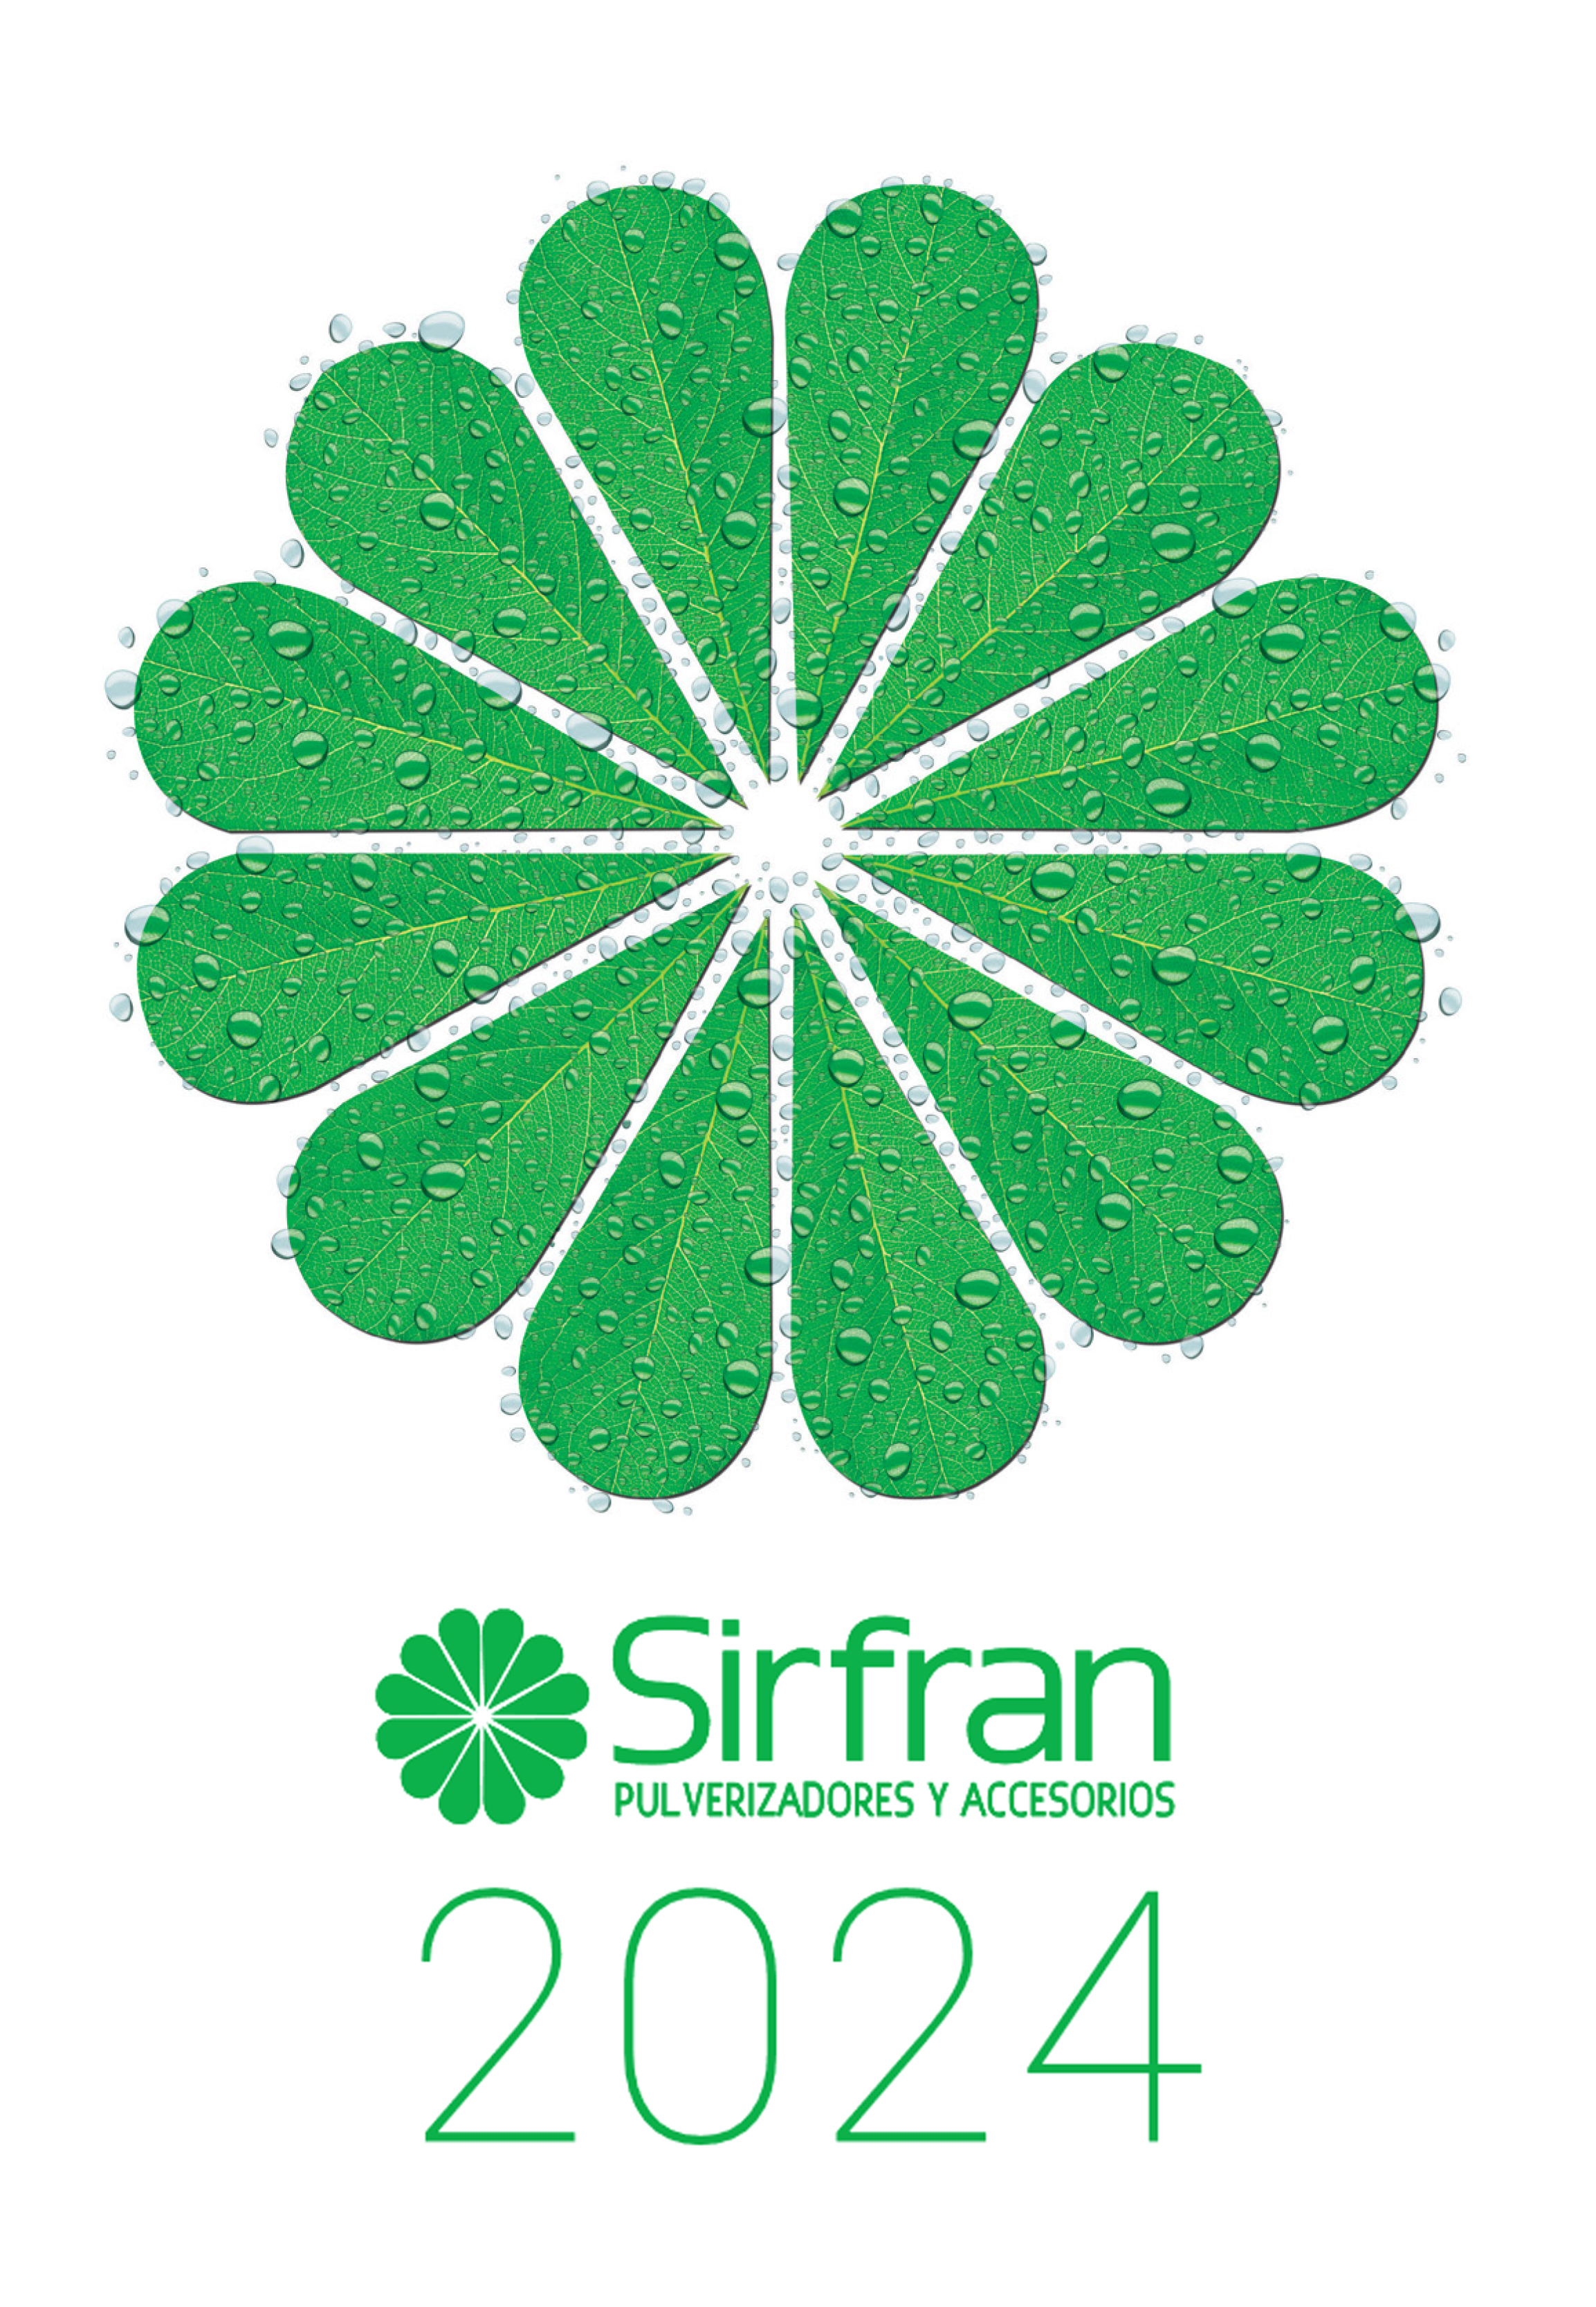 Sirfran 2024